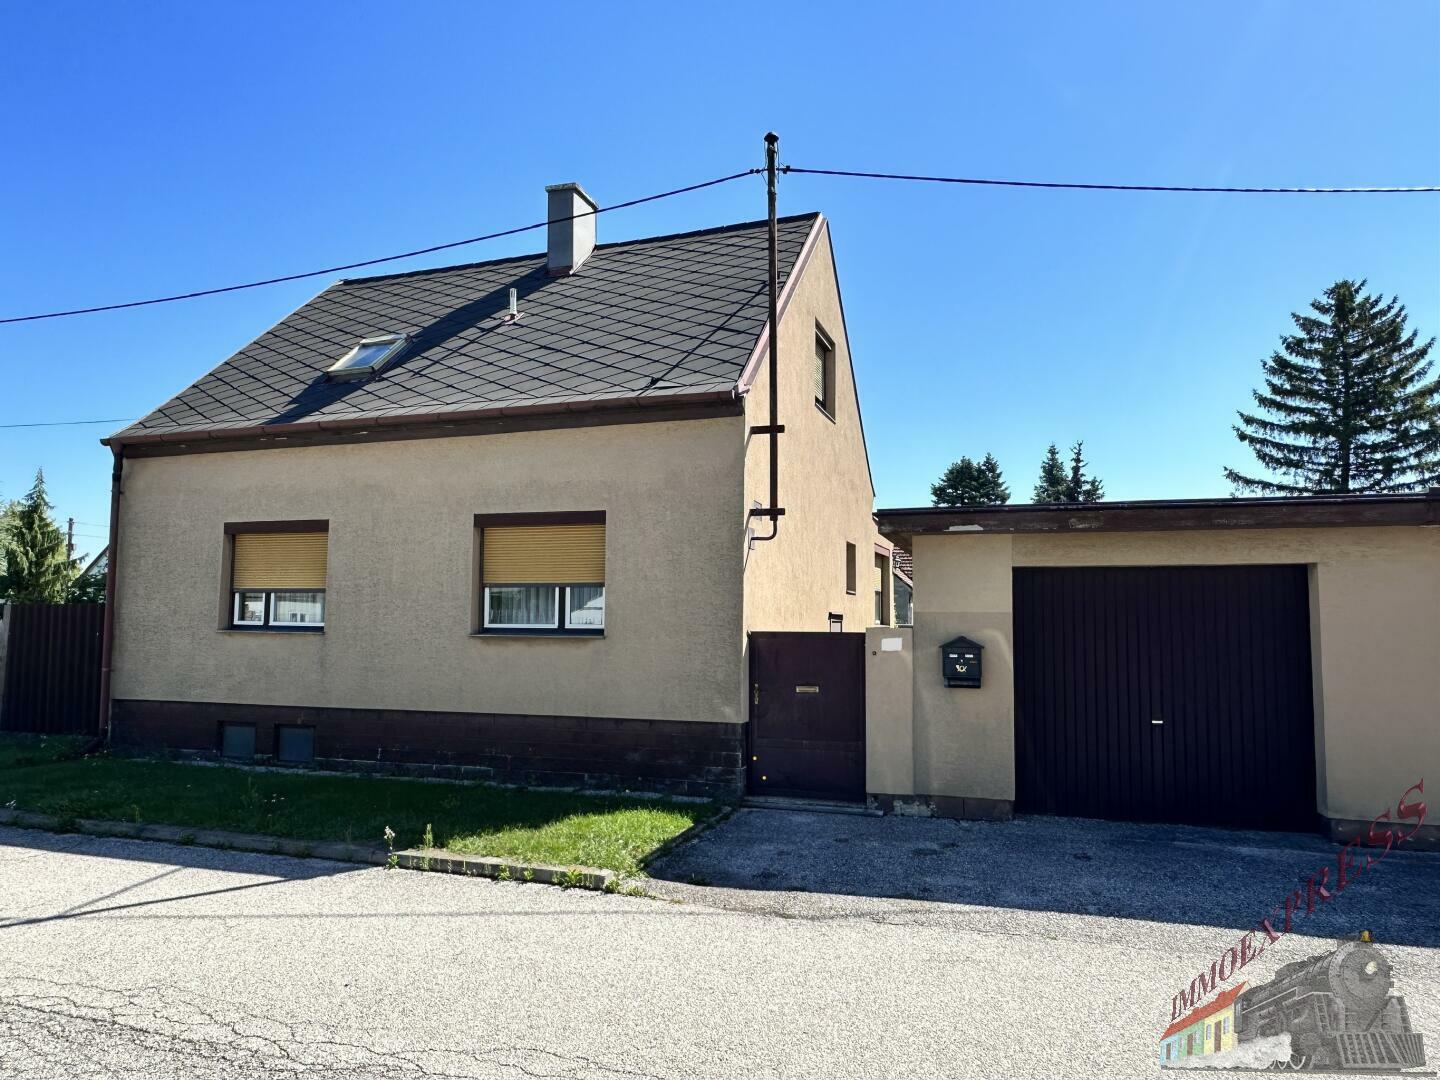 Verkauft! Ausbaufähiges Einfamilienhaus in Sollenau